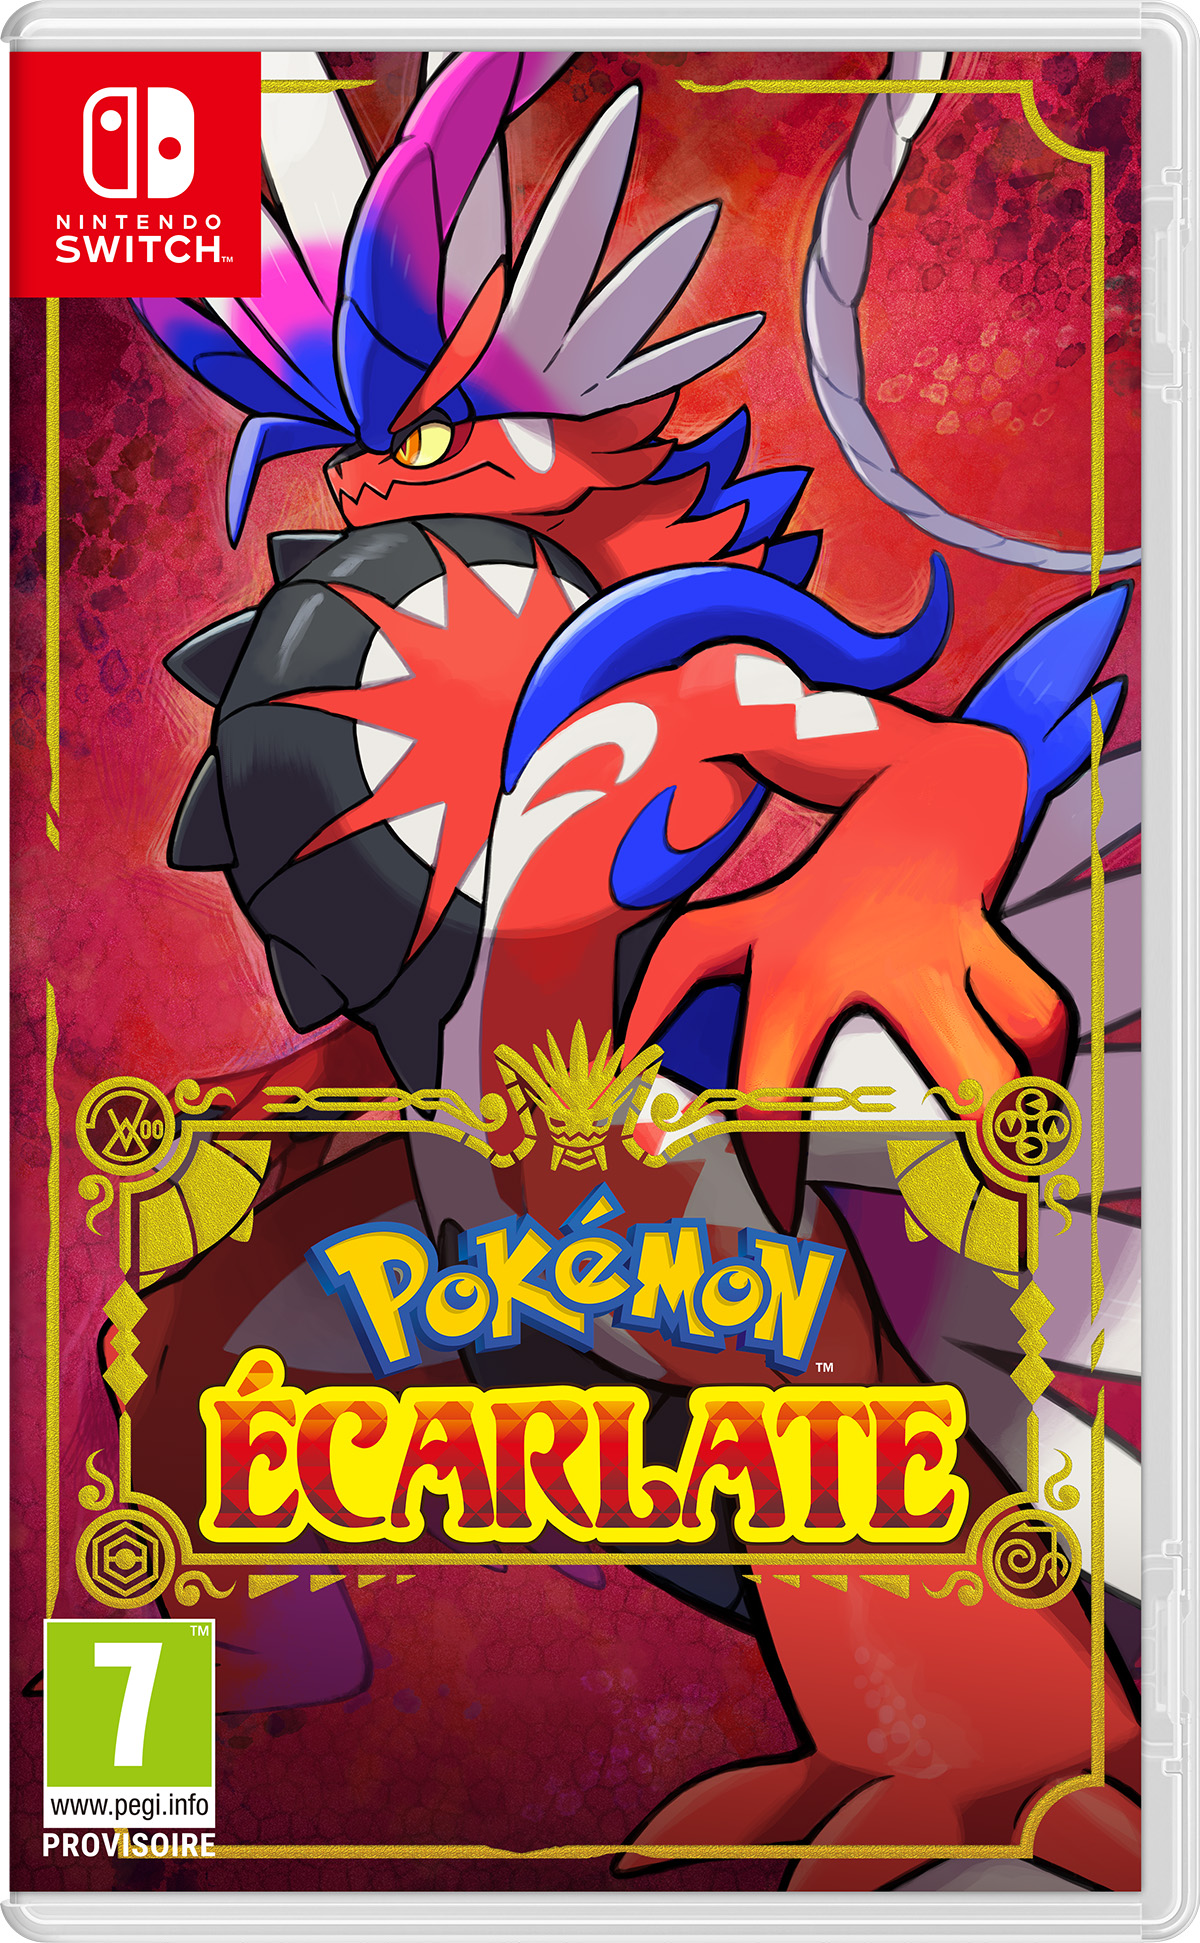 Pokemon ecarlate cover 18